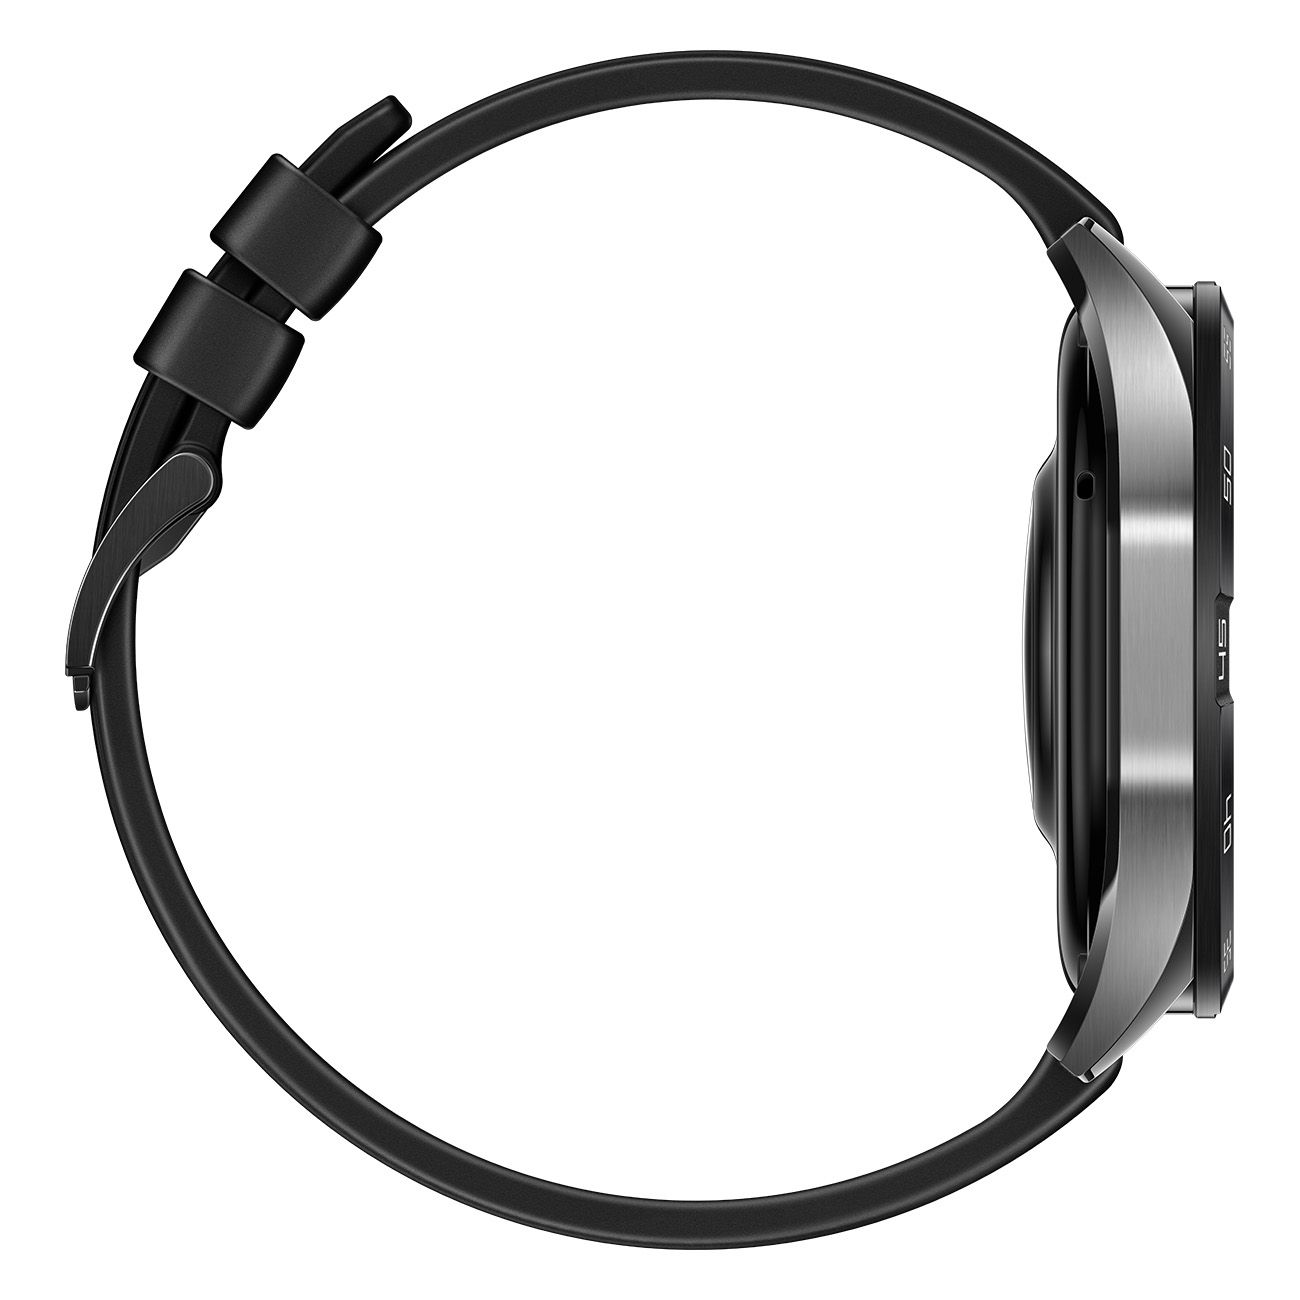 Huawei Watch GT4 46mm Smartwatch